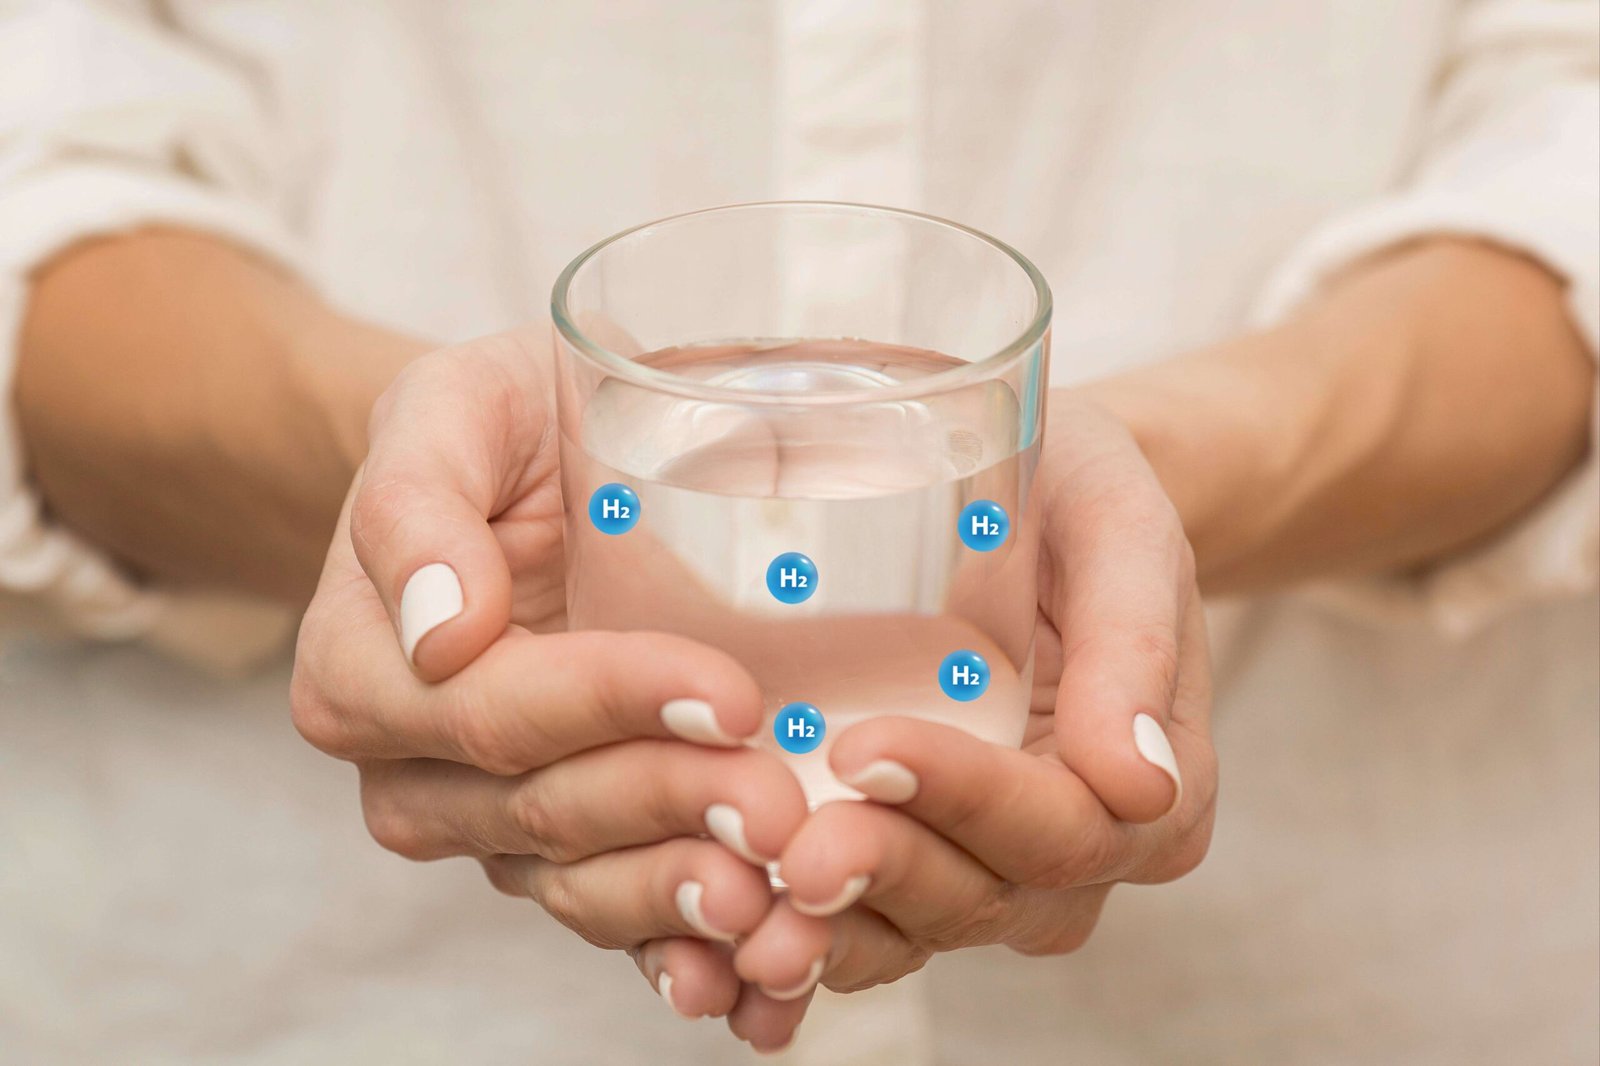 Uống nước giàu Hydro giúp bổ sung Hydro - là chất chống oxy hóa mạnh và an toàn cho cơ thể